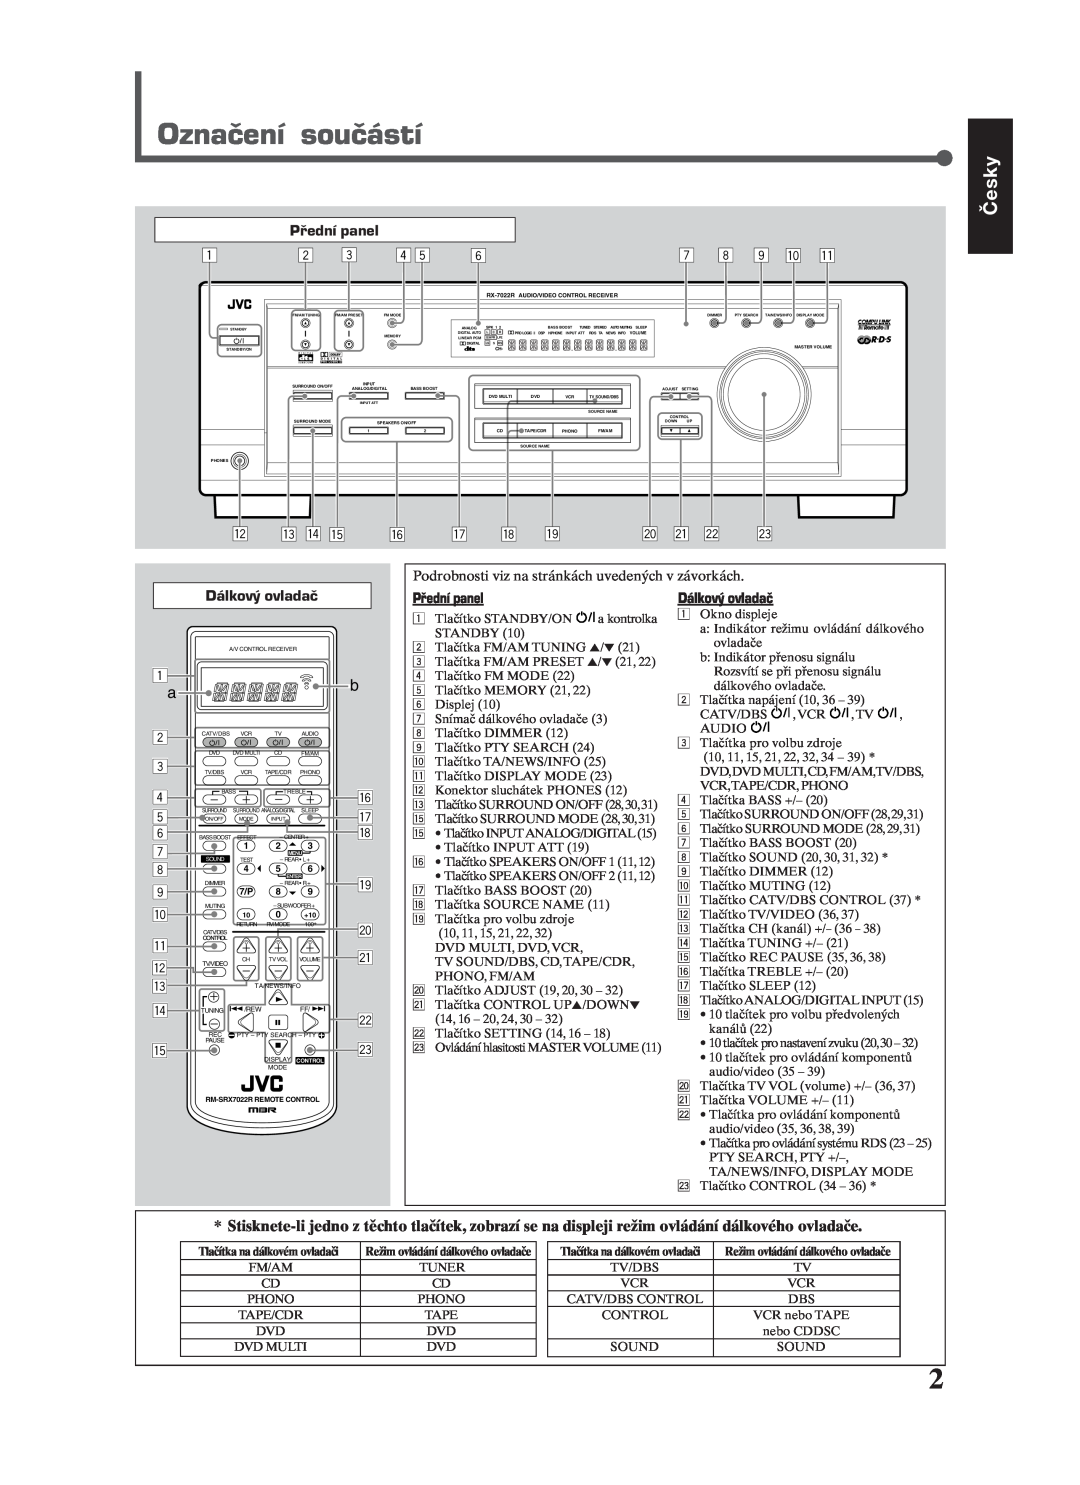 JVC RX-7022RSL manual Označení součástí, Česky, 7 8 9 p q, w e r t y, u i o, a s d 